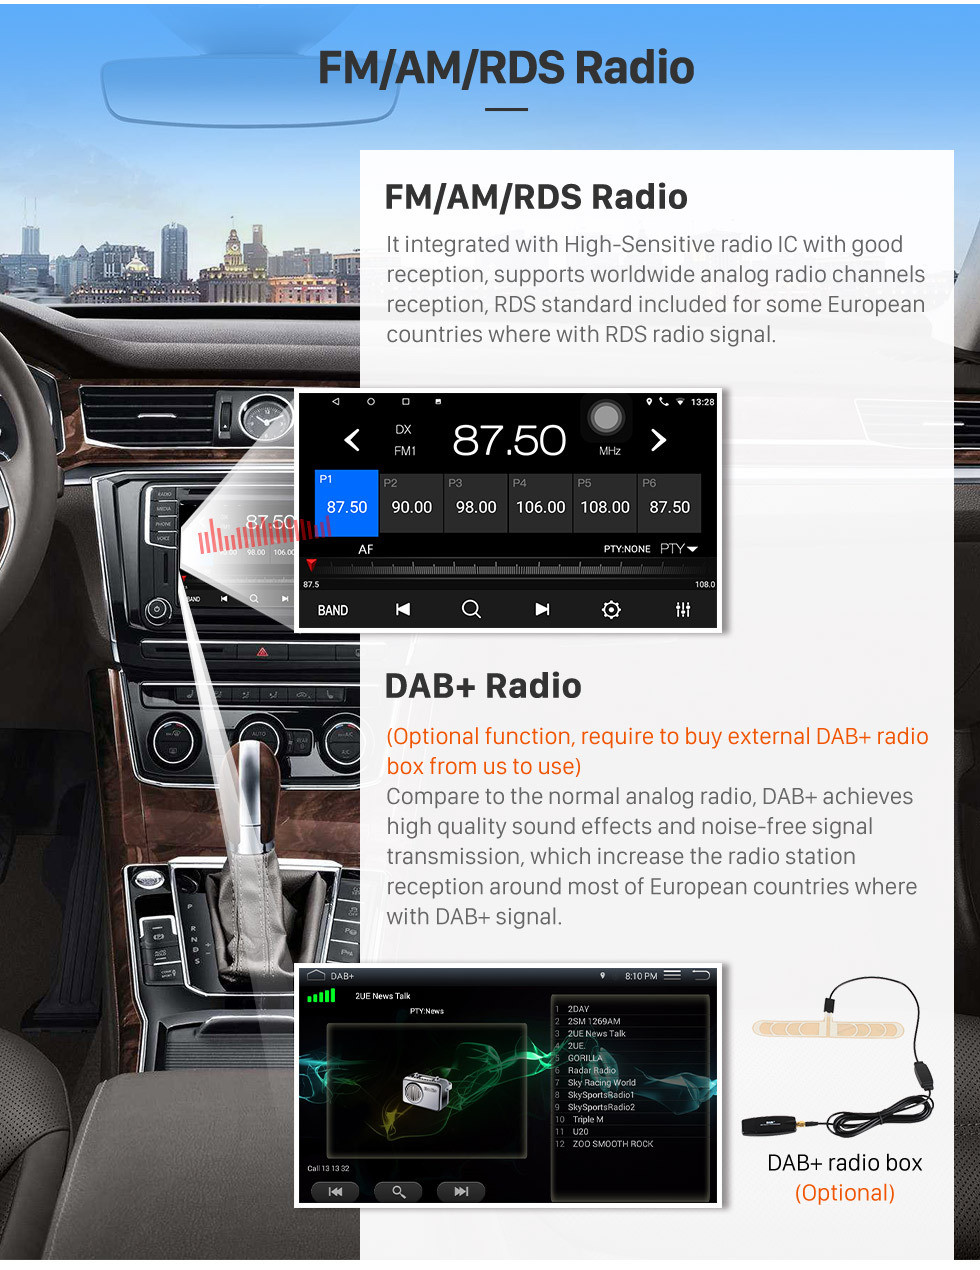 Seicane Radio de navigation GPS à écran tactile Android 10.0 pour Ford Everest / Ranger 2006-2010 avec support Bluetooth USB WIFI AUX caméra de recul Carplay SWC